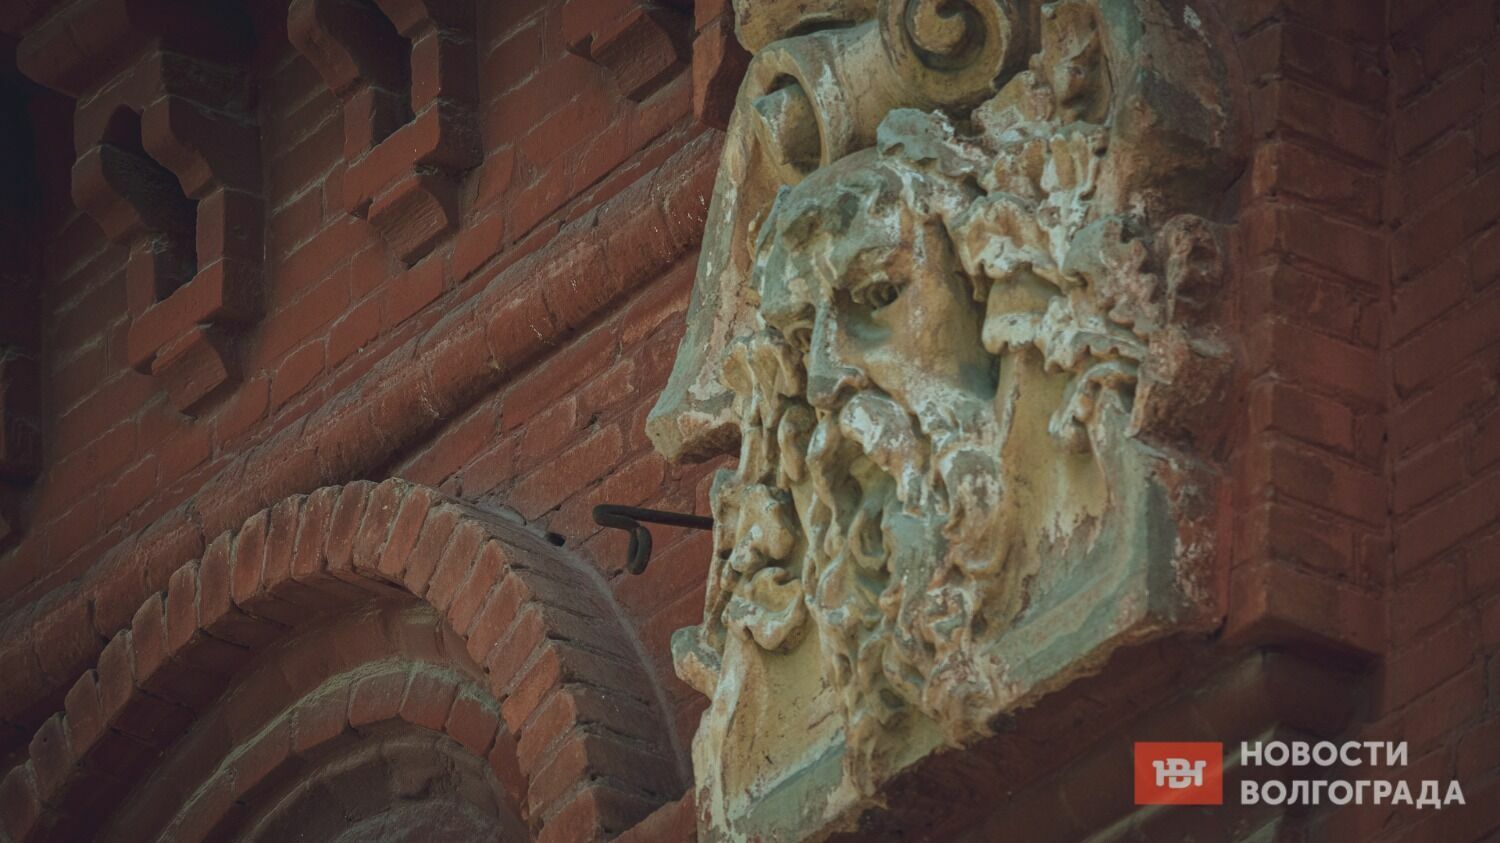 Дореволюционных памятников архитектуры в Ворошиловском районе Волгограда сохранилось много